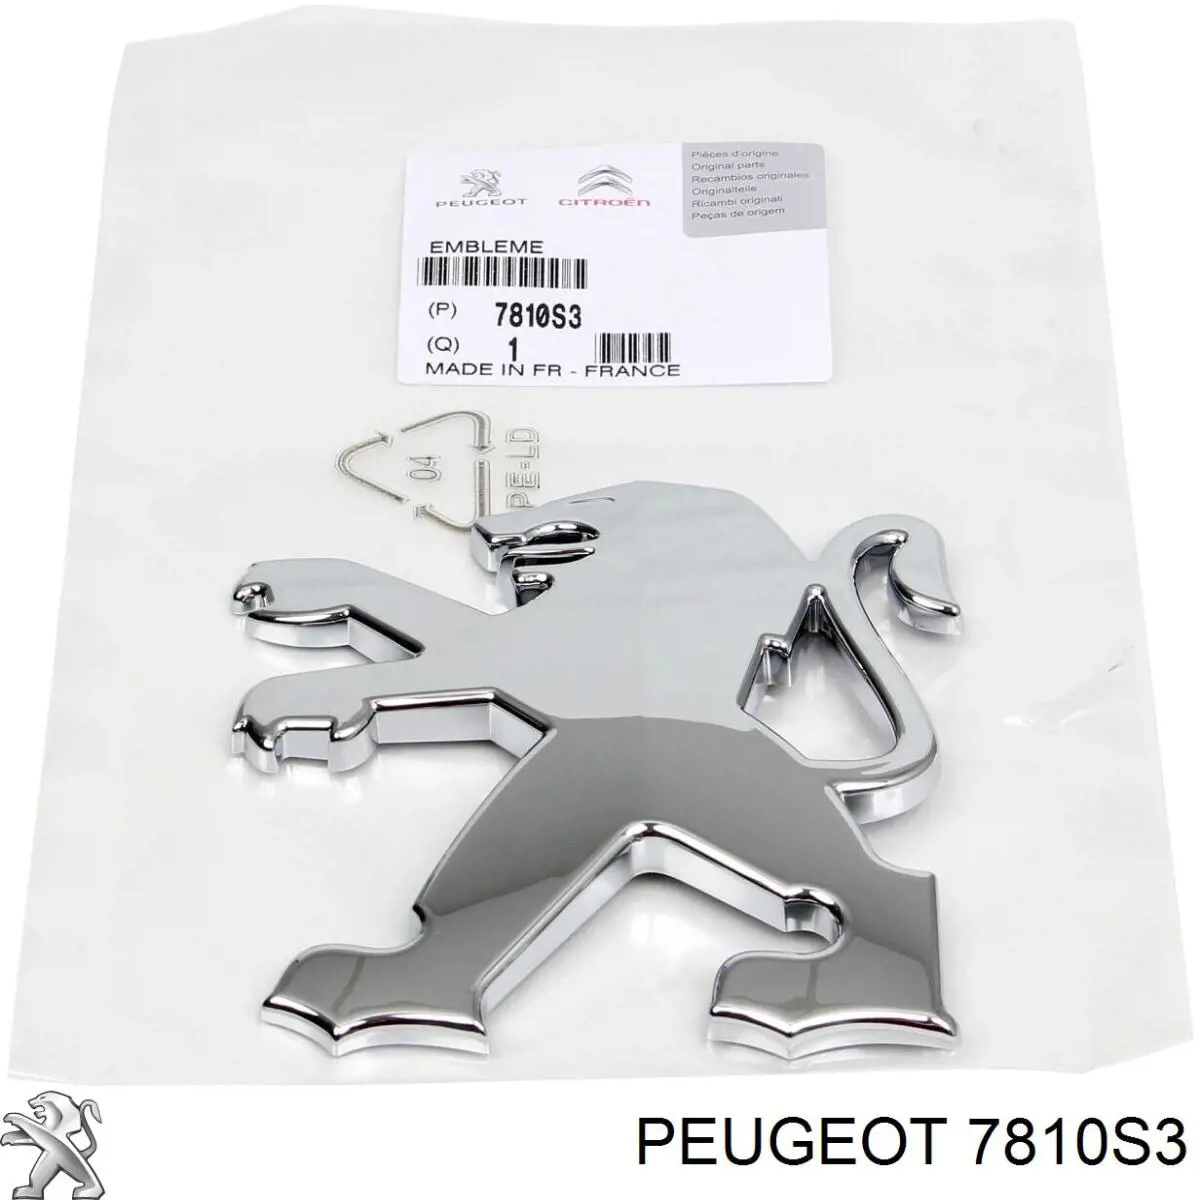 7810S3 Peugeot/Citroen emblema de tapa de maletero